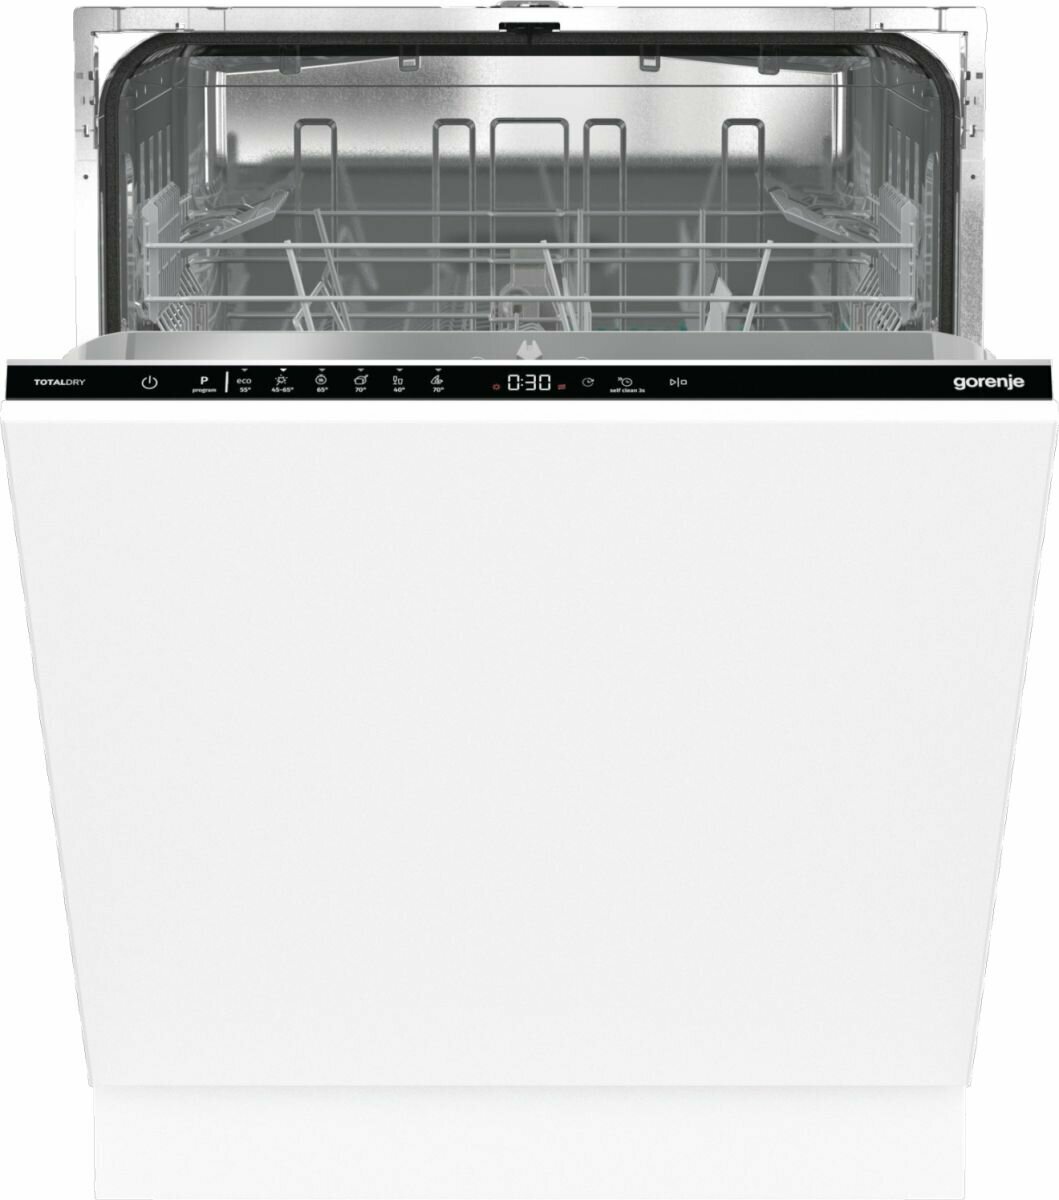 Посудомоечная машина встраиваемая Gorenje GV642D90 белая